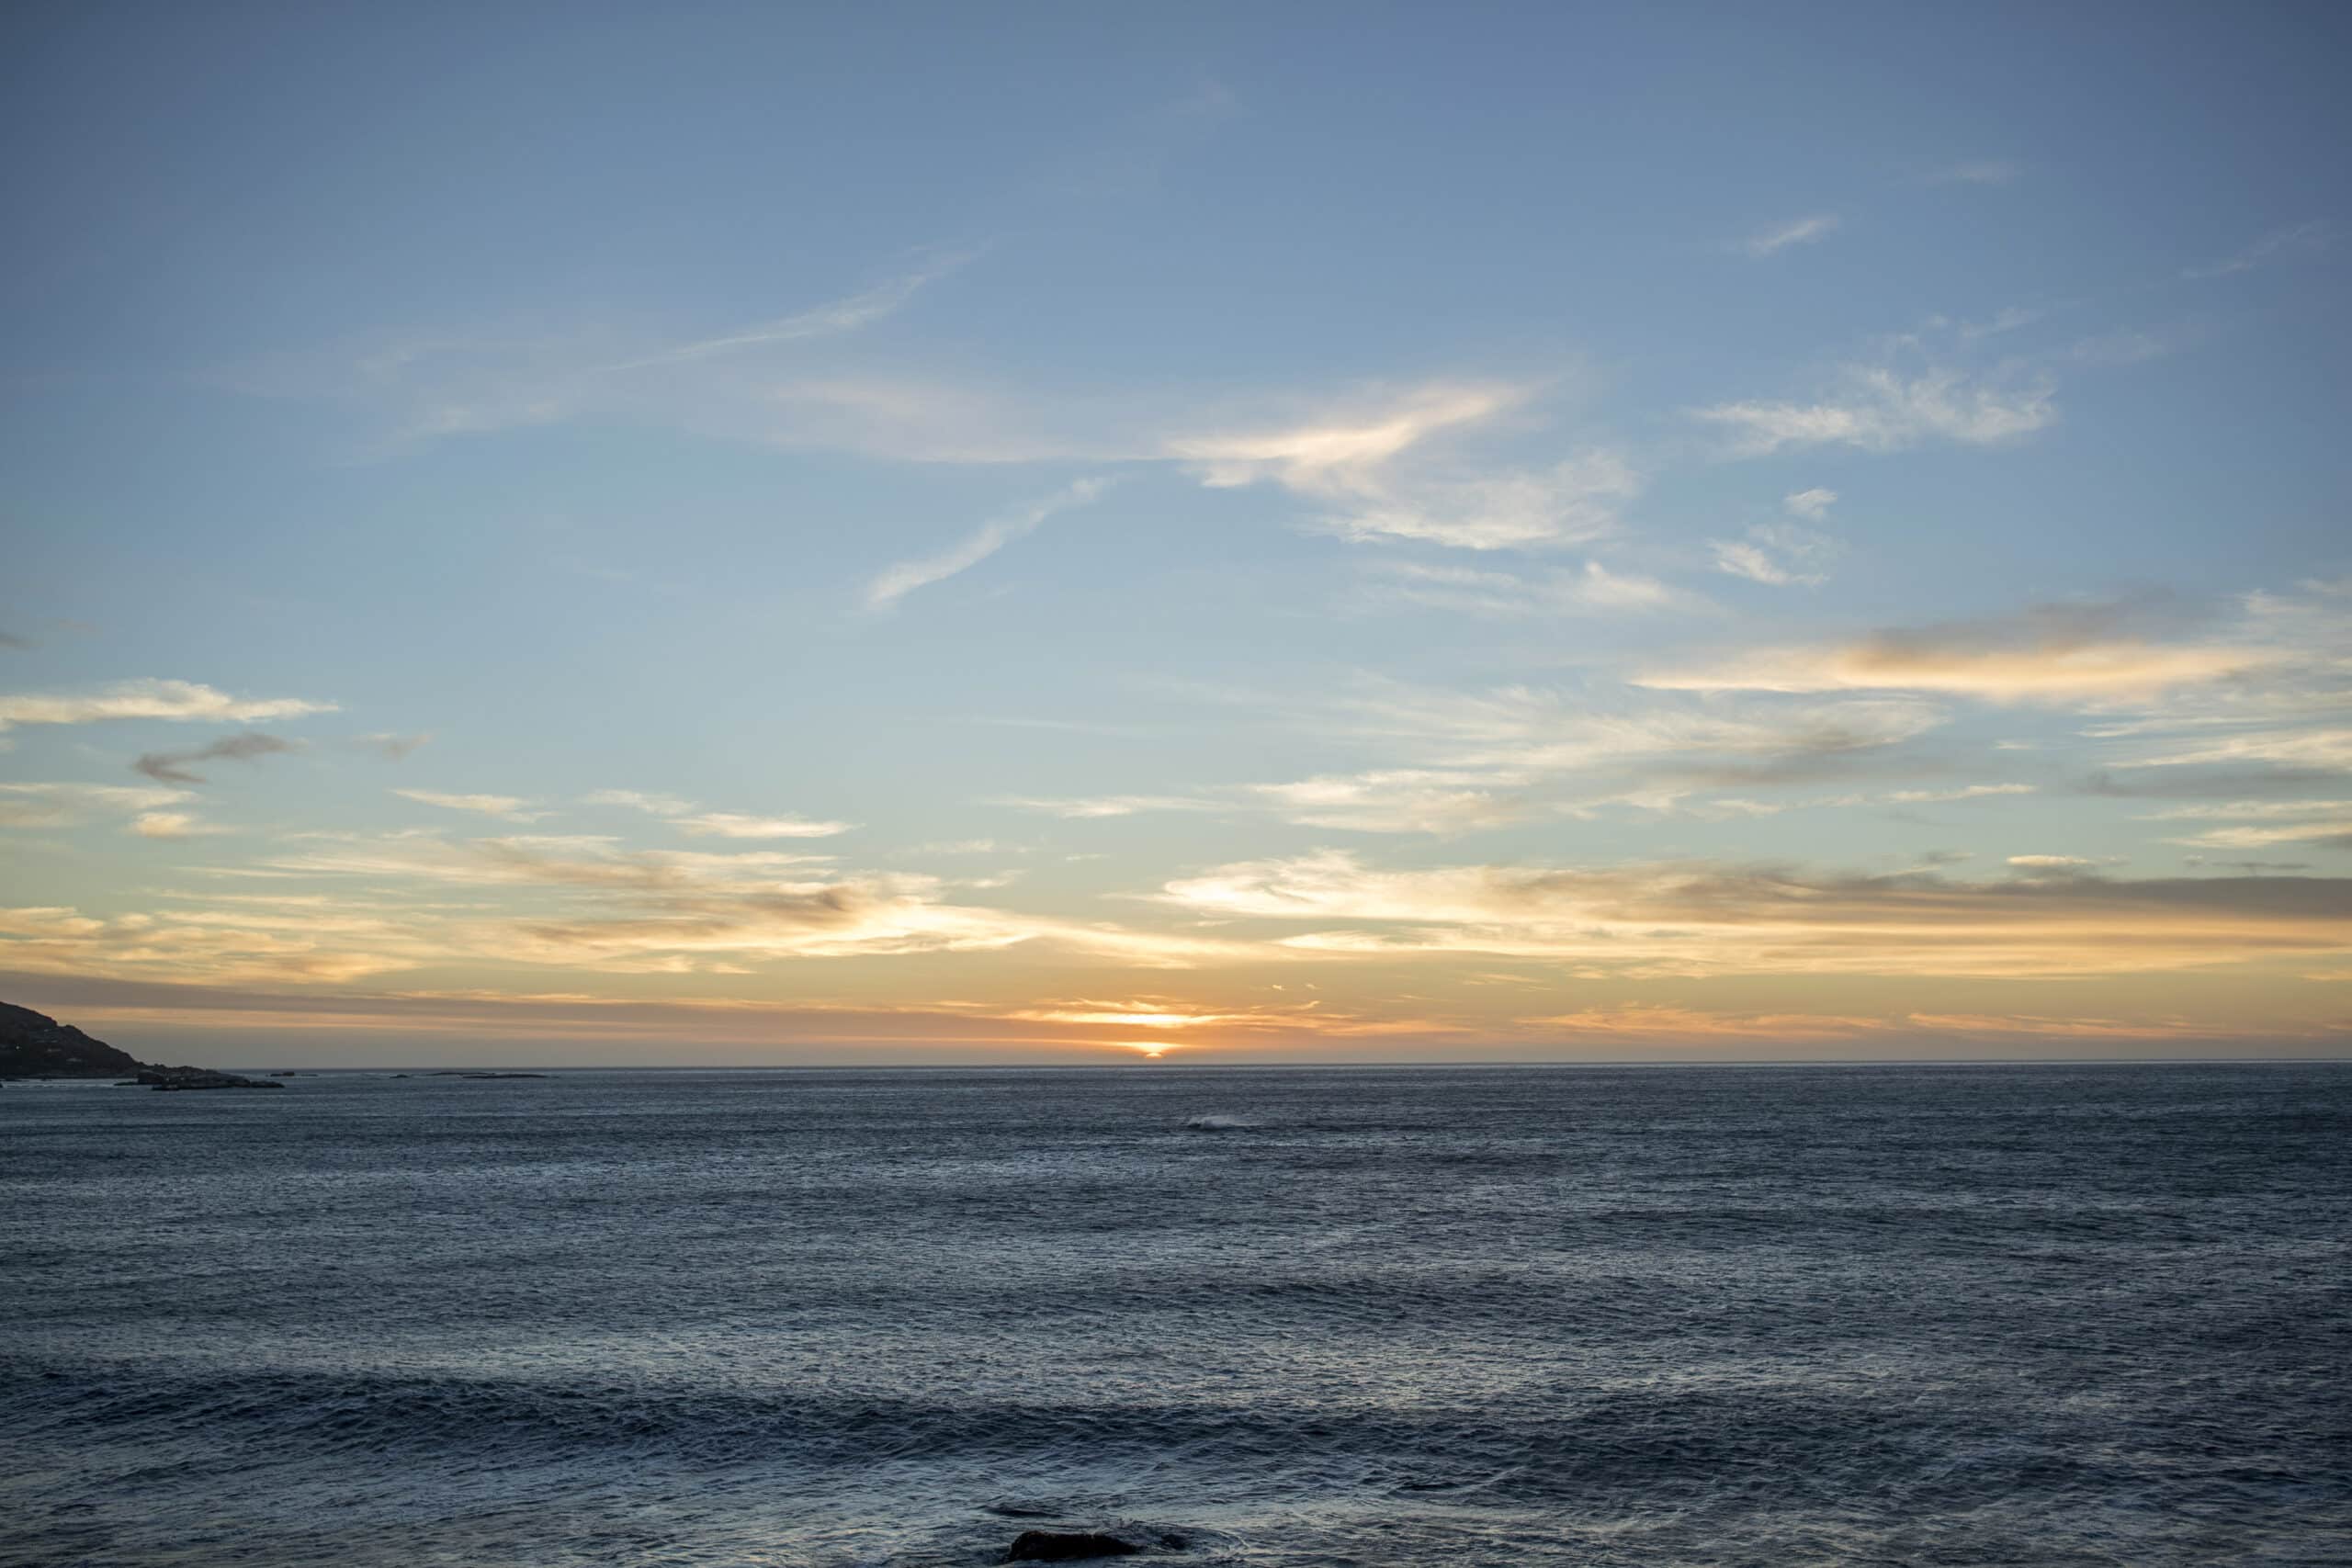 Ein ruhiger Sonnenuntergang über dem Ozean mit vereinzelten Wolken und ruhiger See und sanften Blau- und Orangetönen am Himmel. © Fotografie Tomas Rodriguez